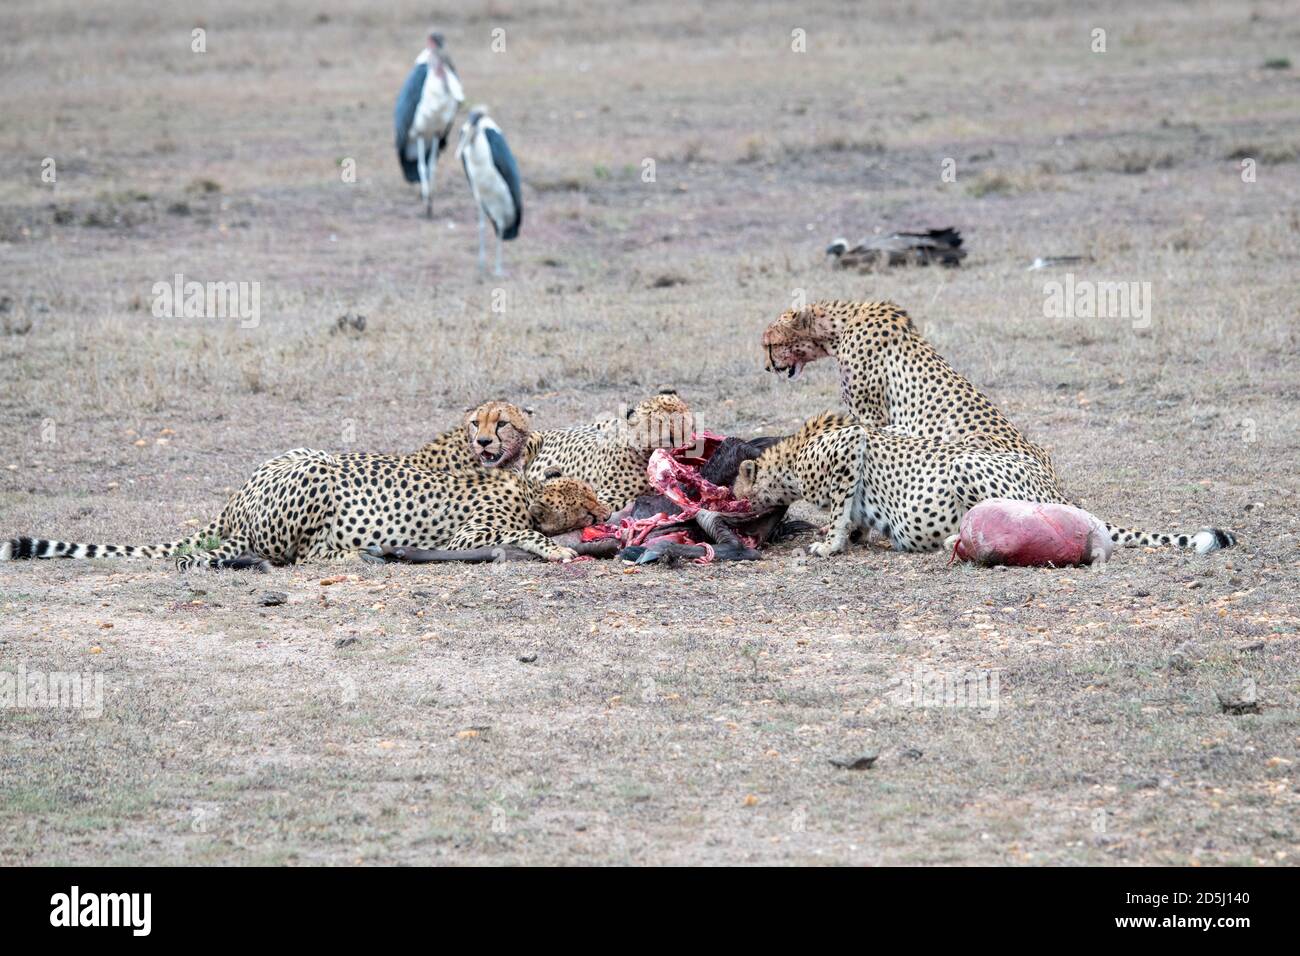 Les cheetahs (Acinonyx jubatus) s'enorgent sur une mort récente au Kenya Banque D'Images